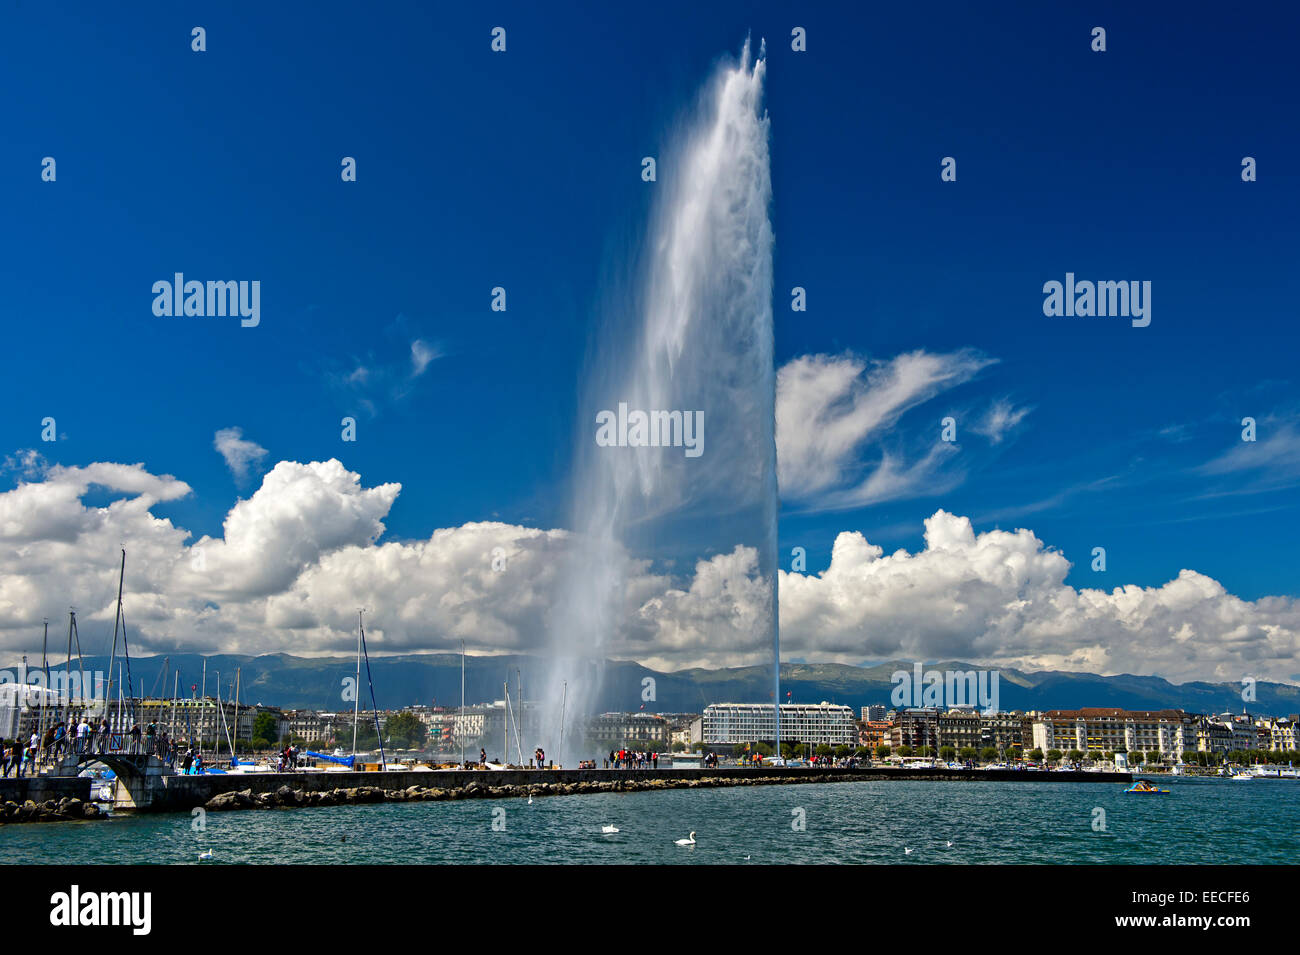 La fontaine géante Jet d'eau dans la zone portuaire, la rade de Genève, Suisse Banque D'Images